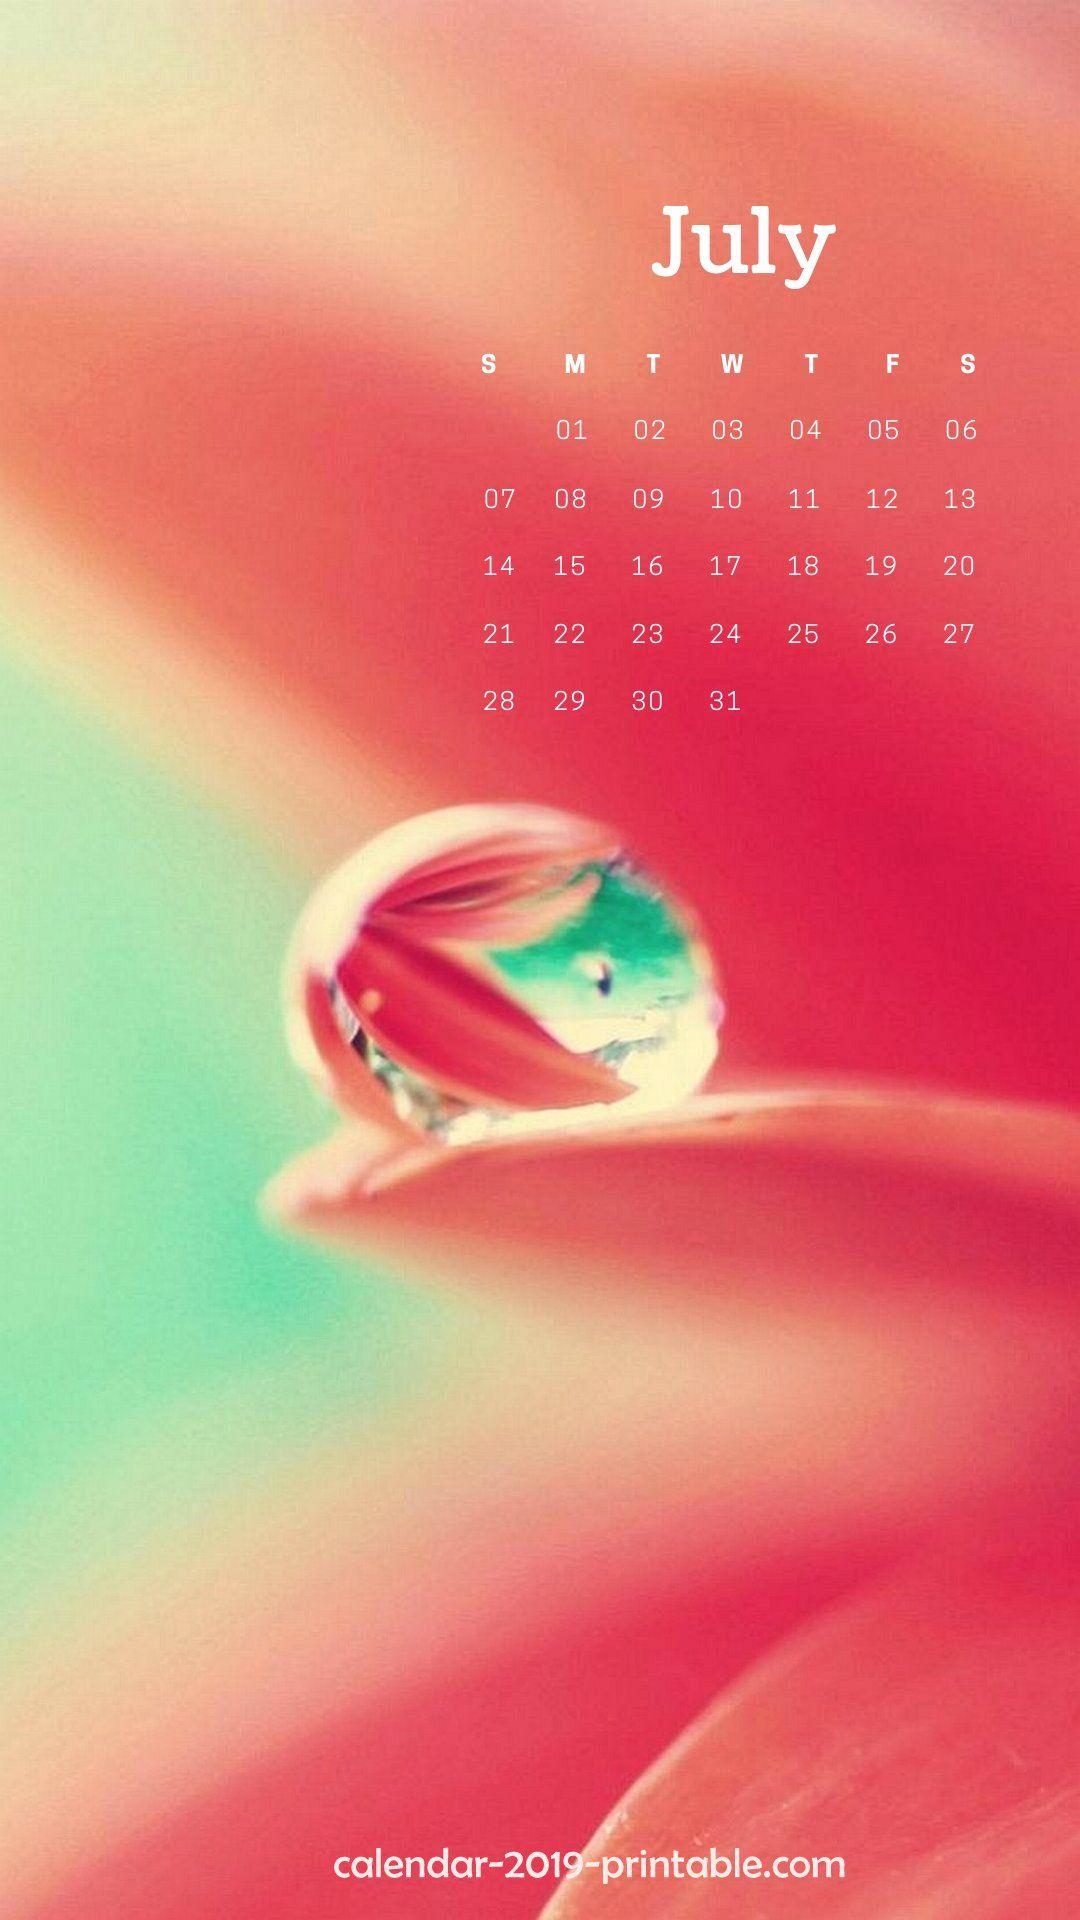 july 2019 iphone calendar cute wallpaper Calendars in 2019